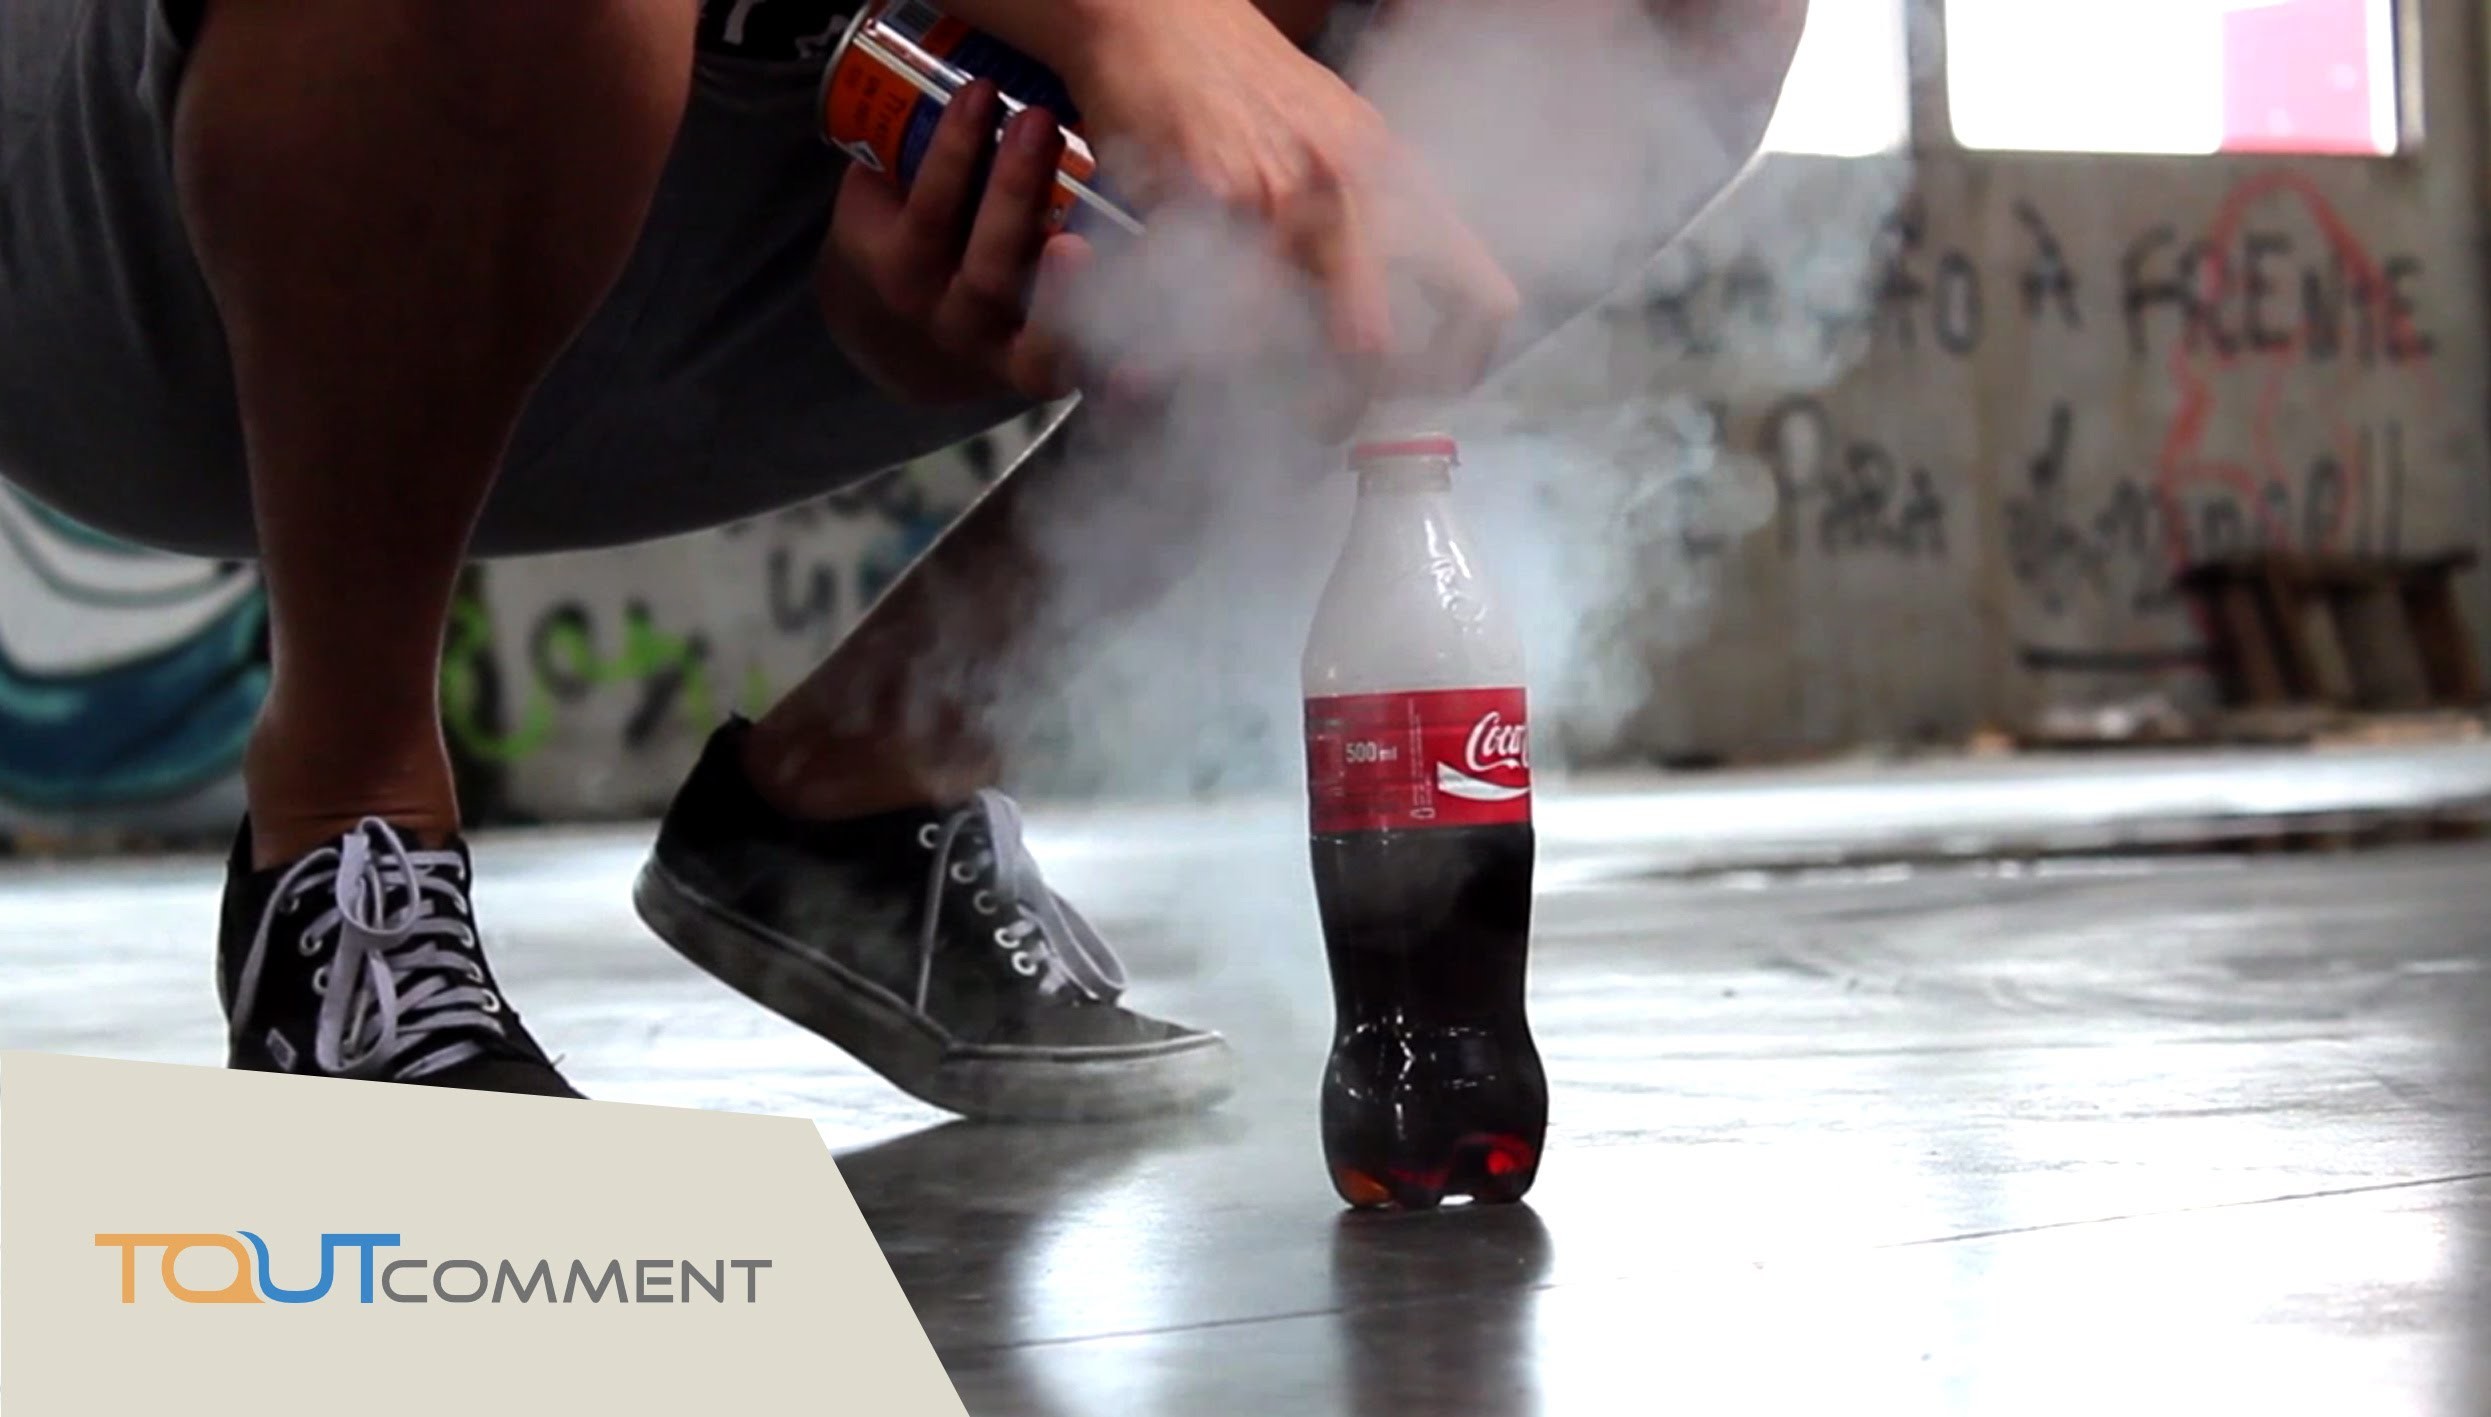 Expérience incroyable à faire à la maison : la bouteille de coca cola fusée !